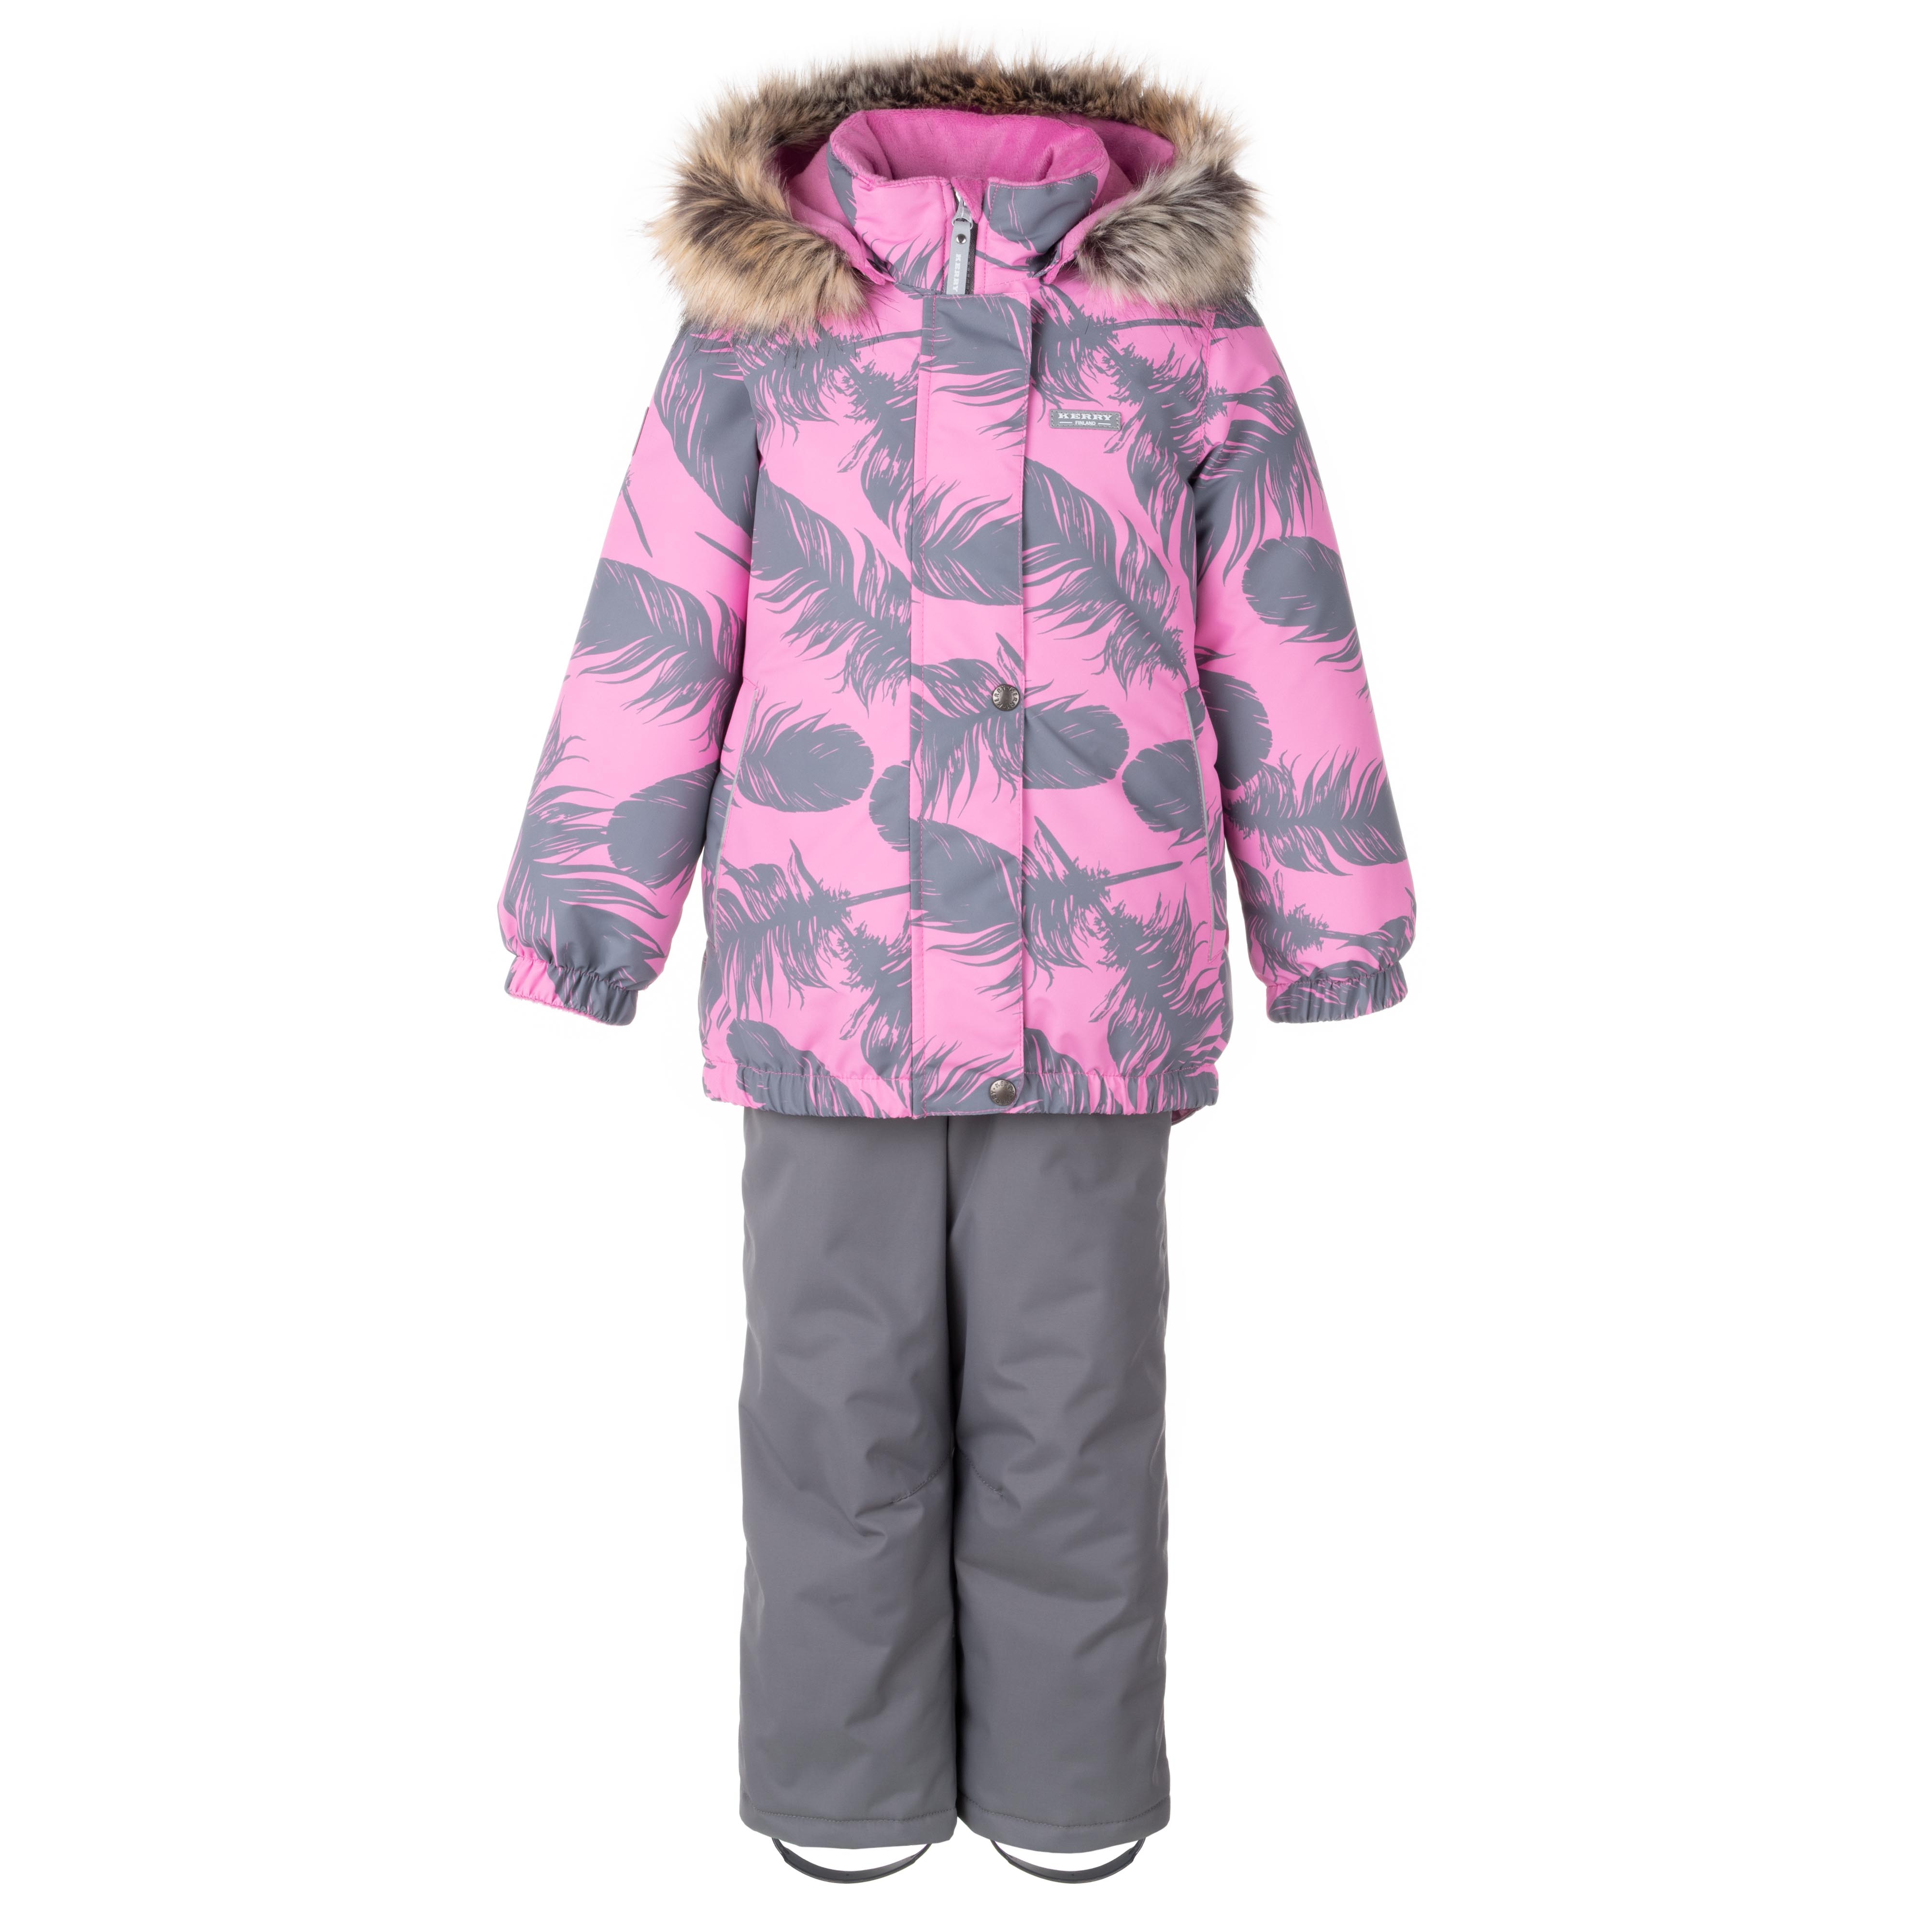 Комплект верхней одежды KERRY K23420 A, серый, розовый, 104